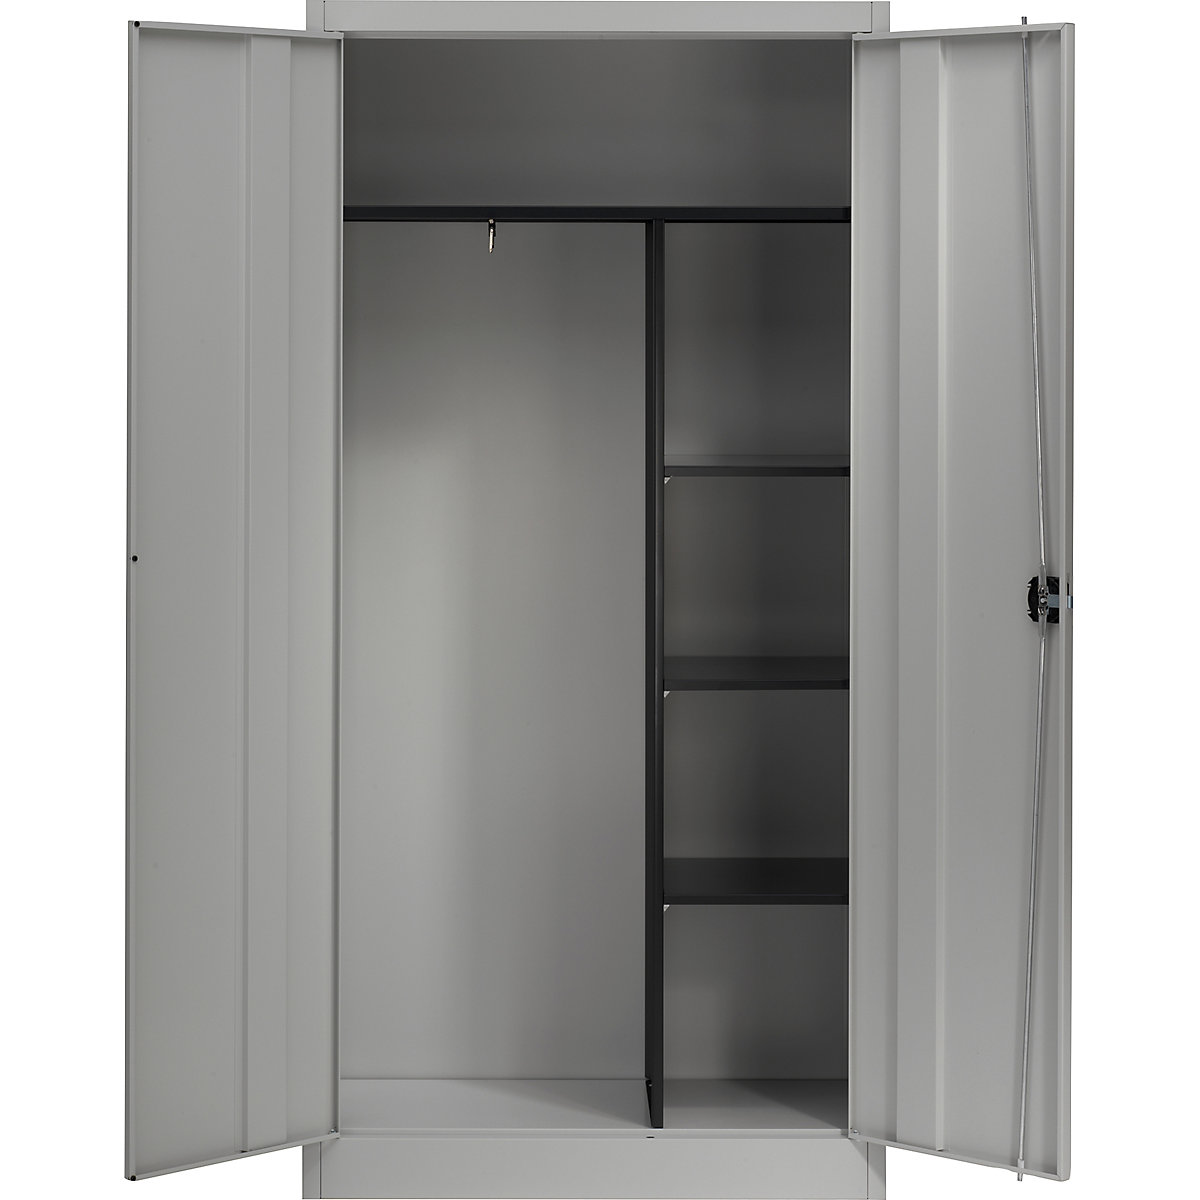 Szafa stalowa z drzwiami skrzydłowymi – mauser, 3 krótkie półki i garderoba, biały aluminium